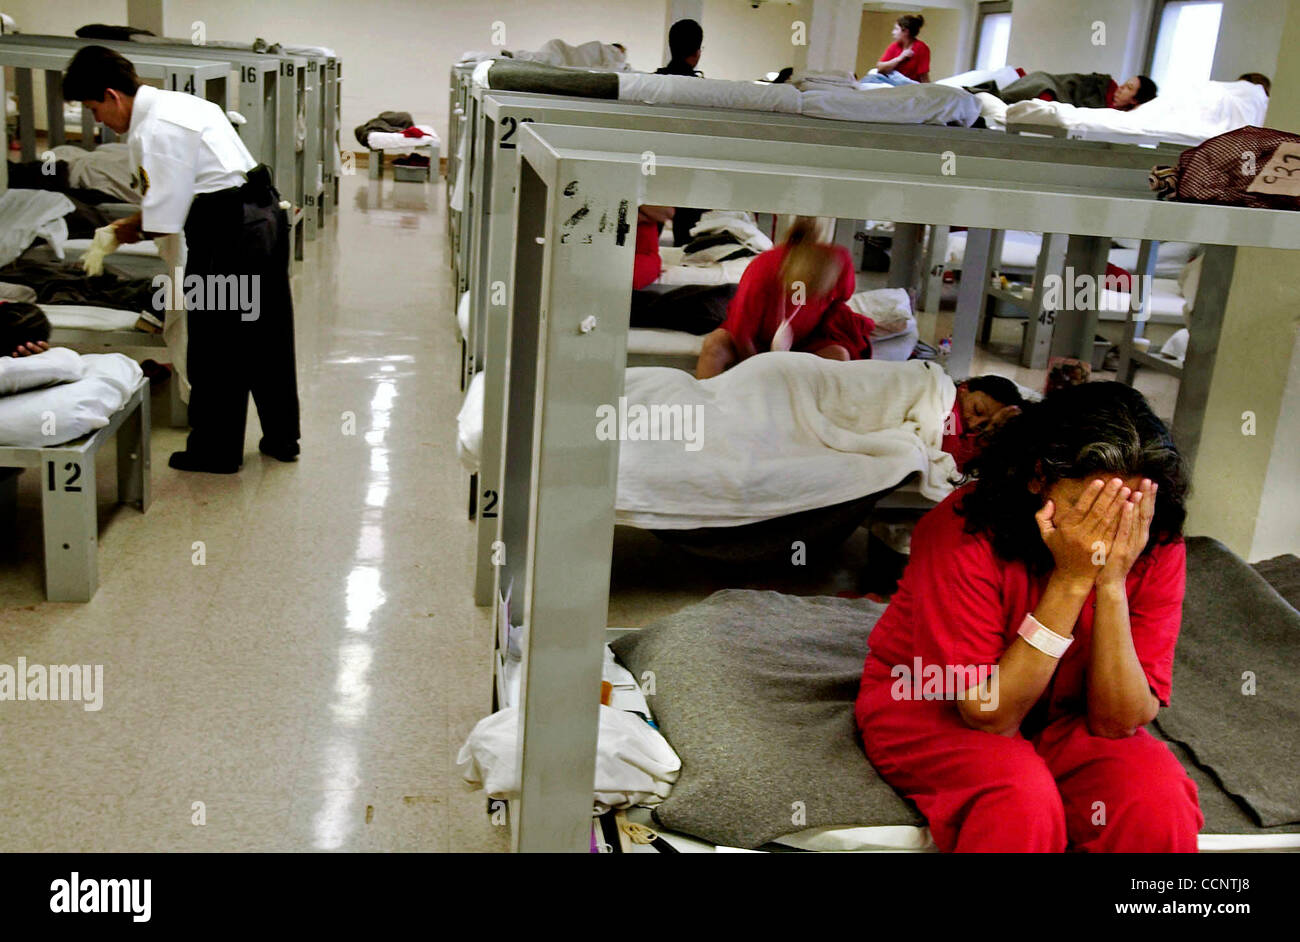 Avril 16, 2004 - Florence, Arizona, États-Unis - une femme detanee est  assise sur son lit bébé dans un pod de femmes à un centre de détention de  Florence, Az. Les détenus